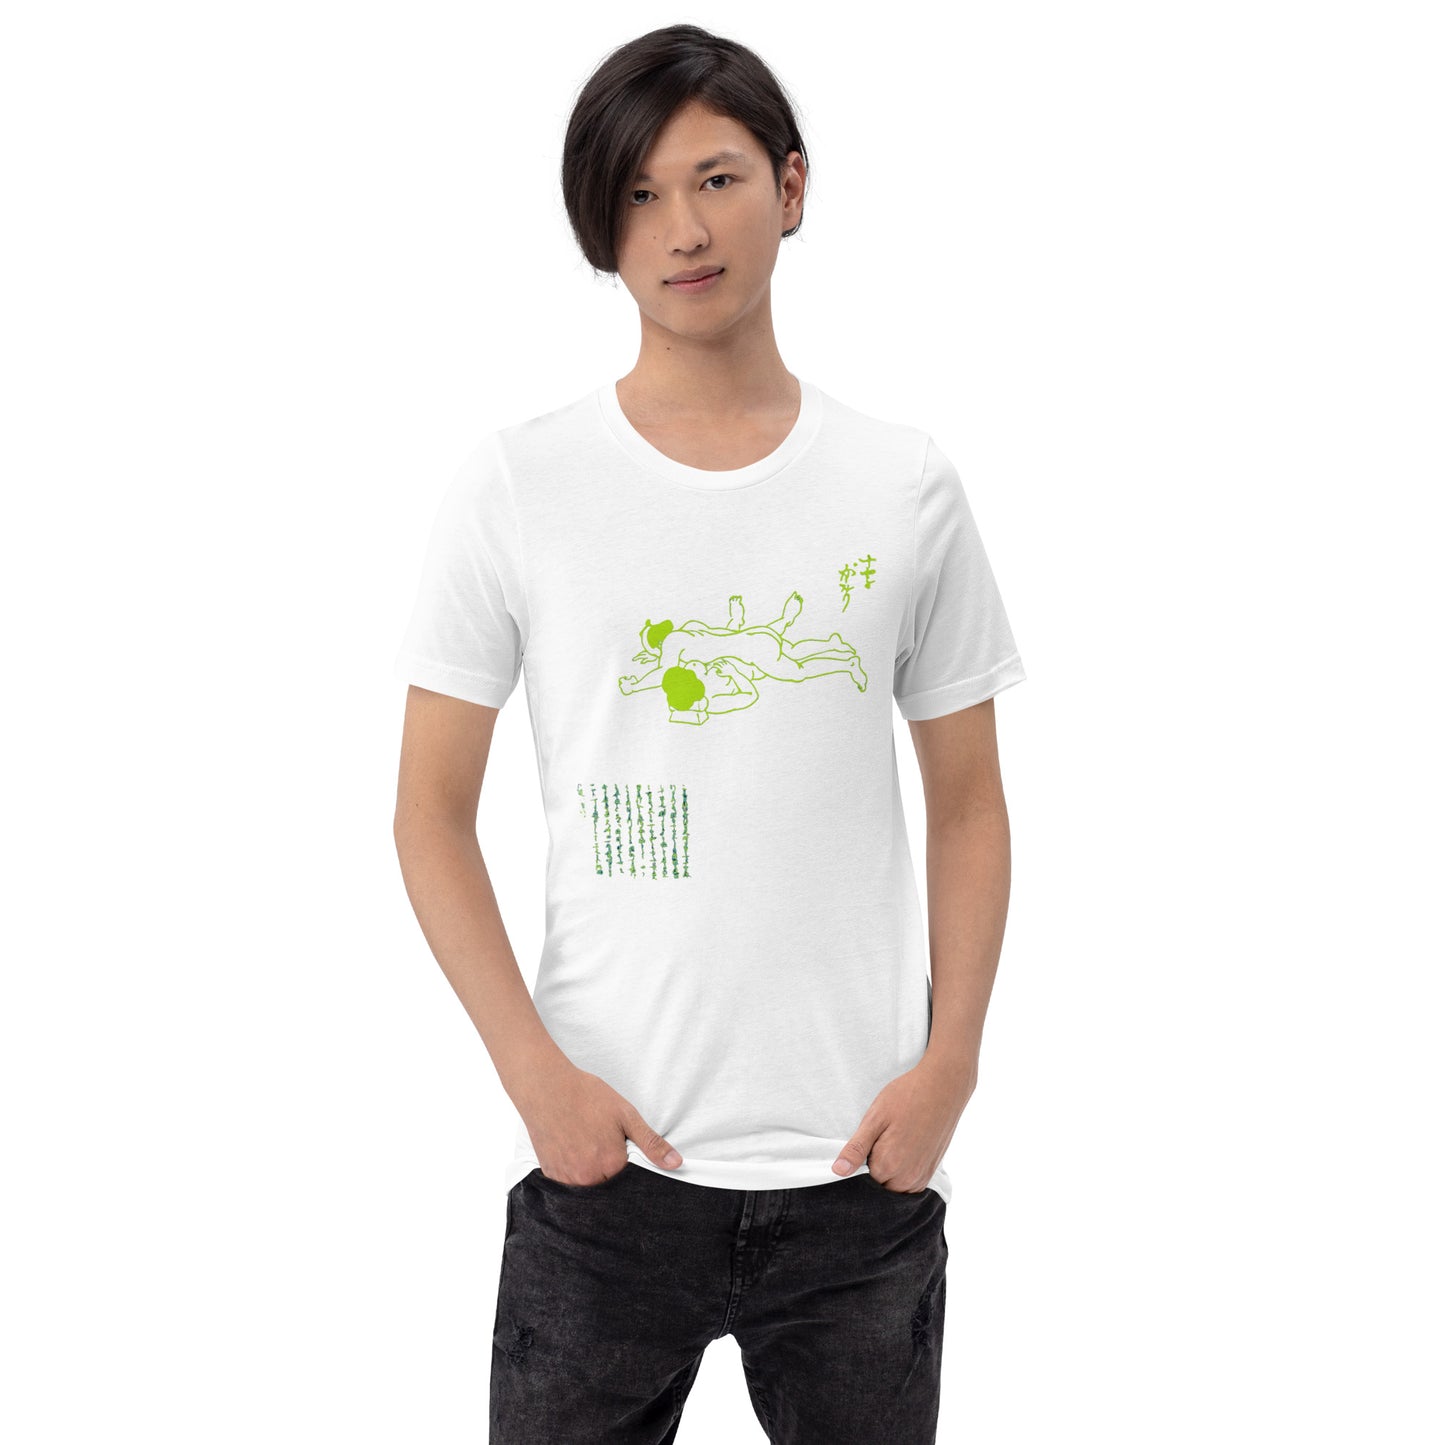 Unisex t-shirt "59 JOUJI GAKARI" White